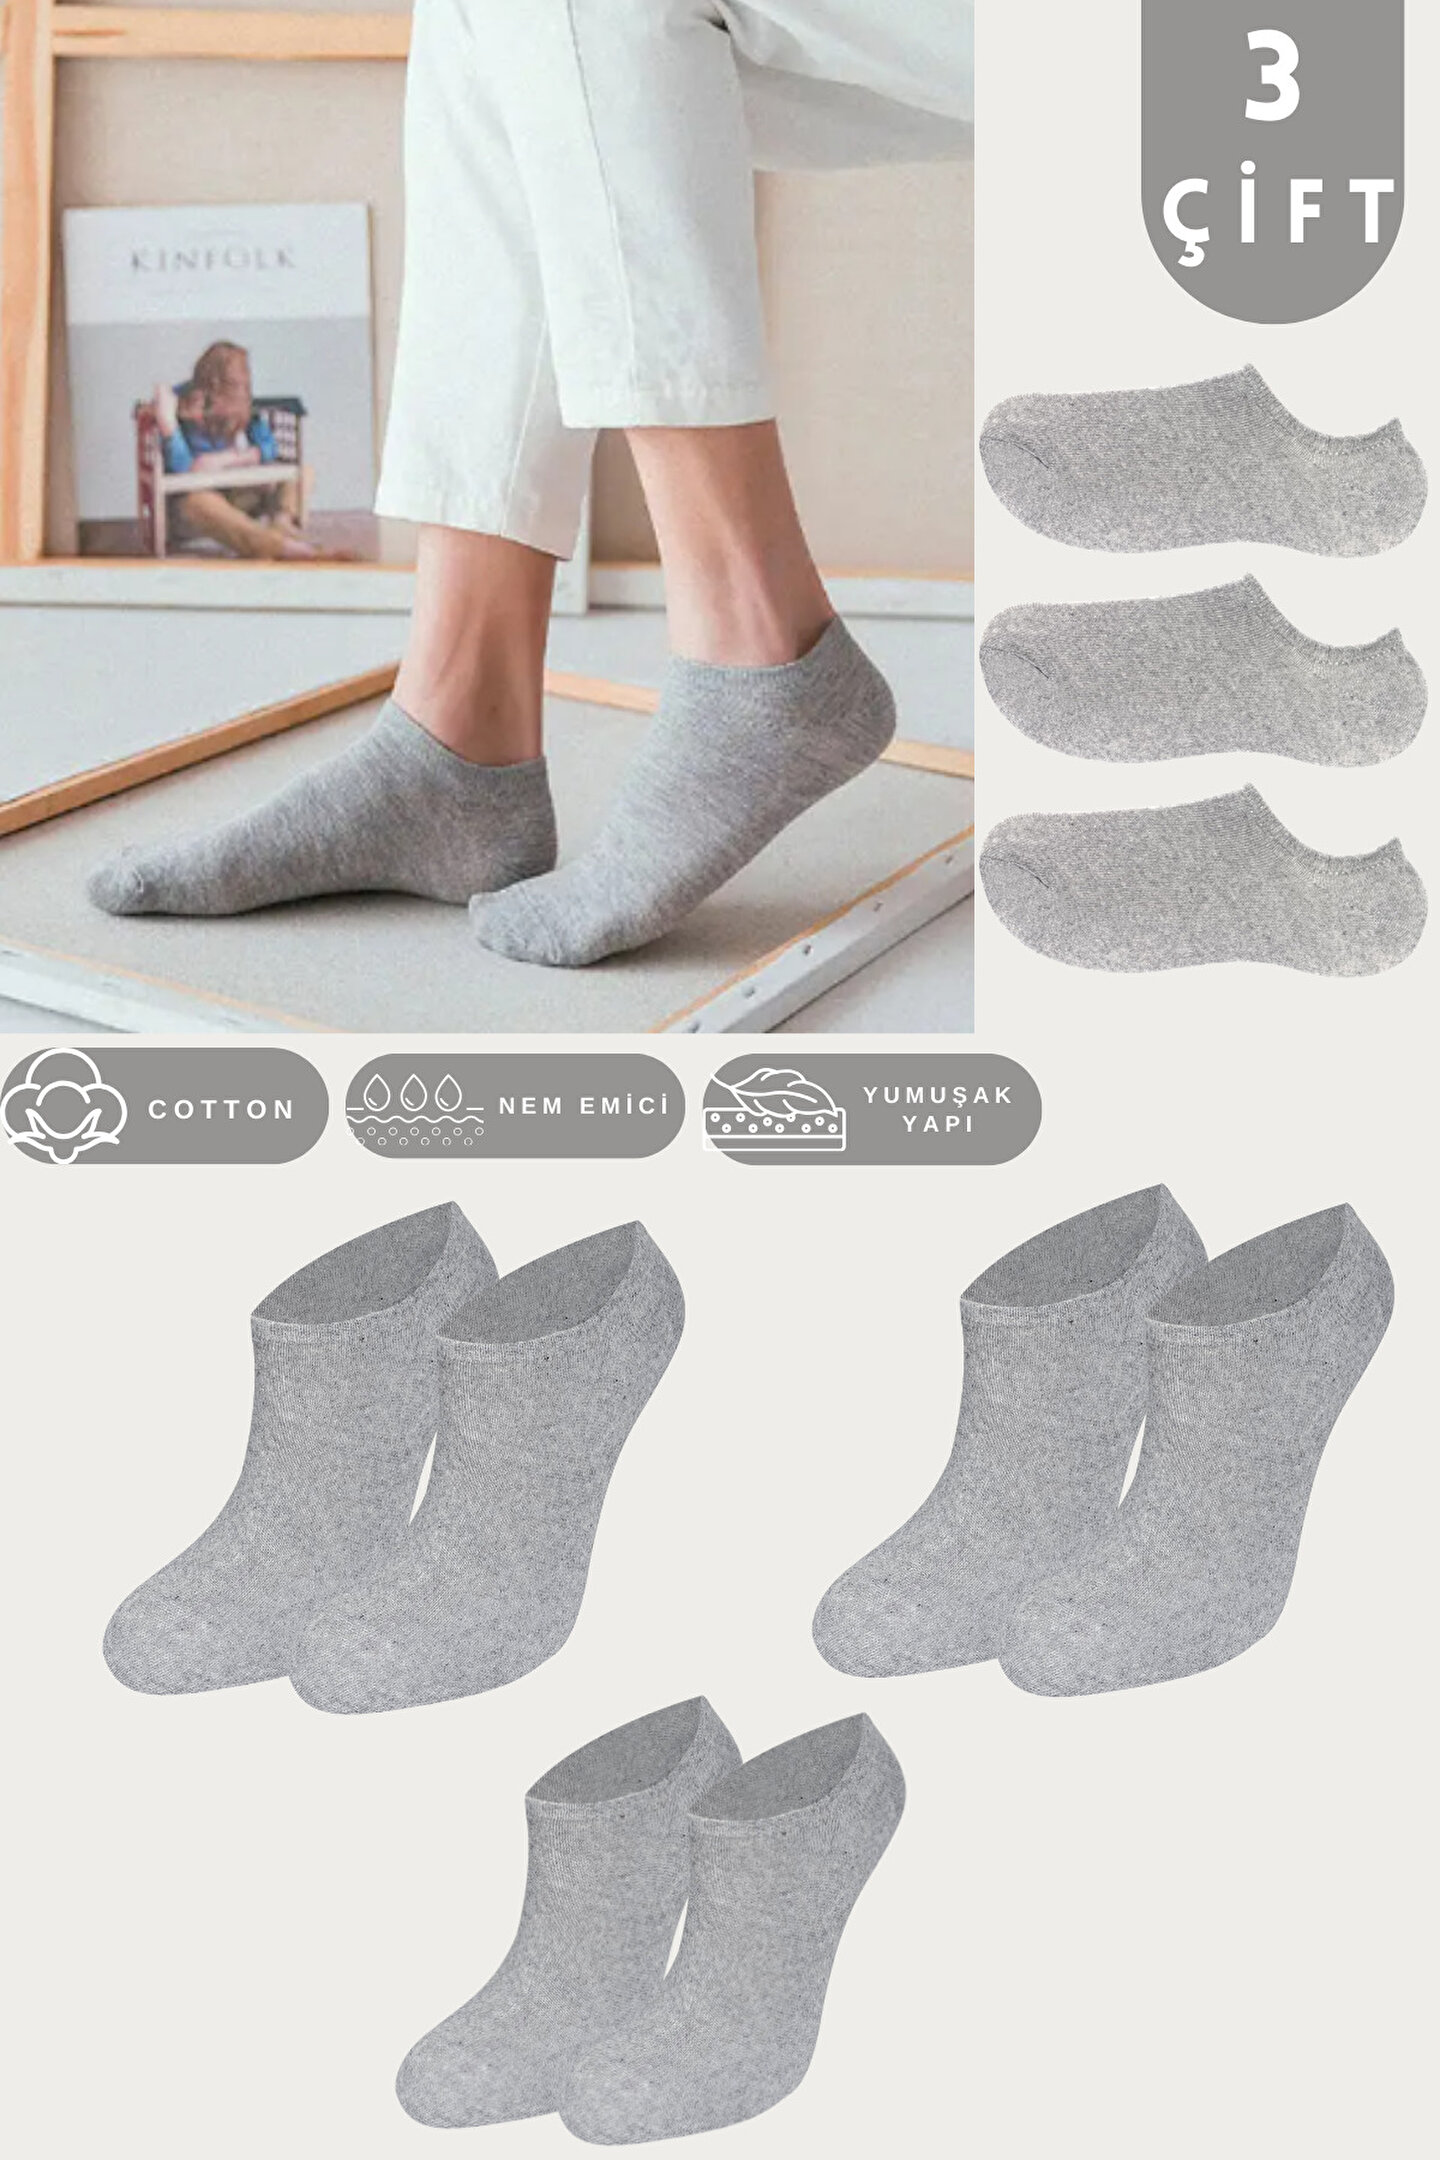 KRAL SOCKS Unisex Düz Desen (3 ÇİFT) Pamuklu Terletmez Yazlık Görünmez Çorap Seti